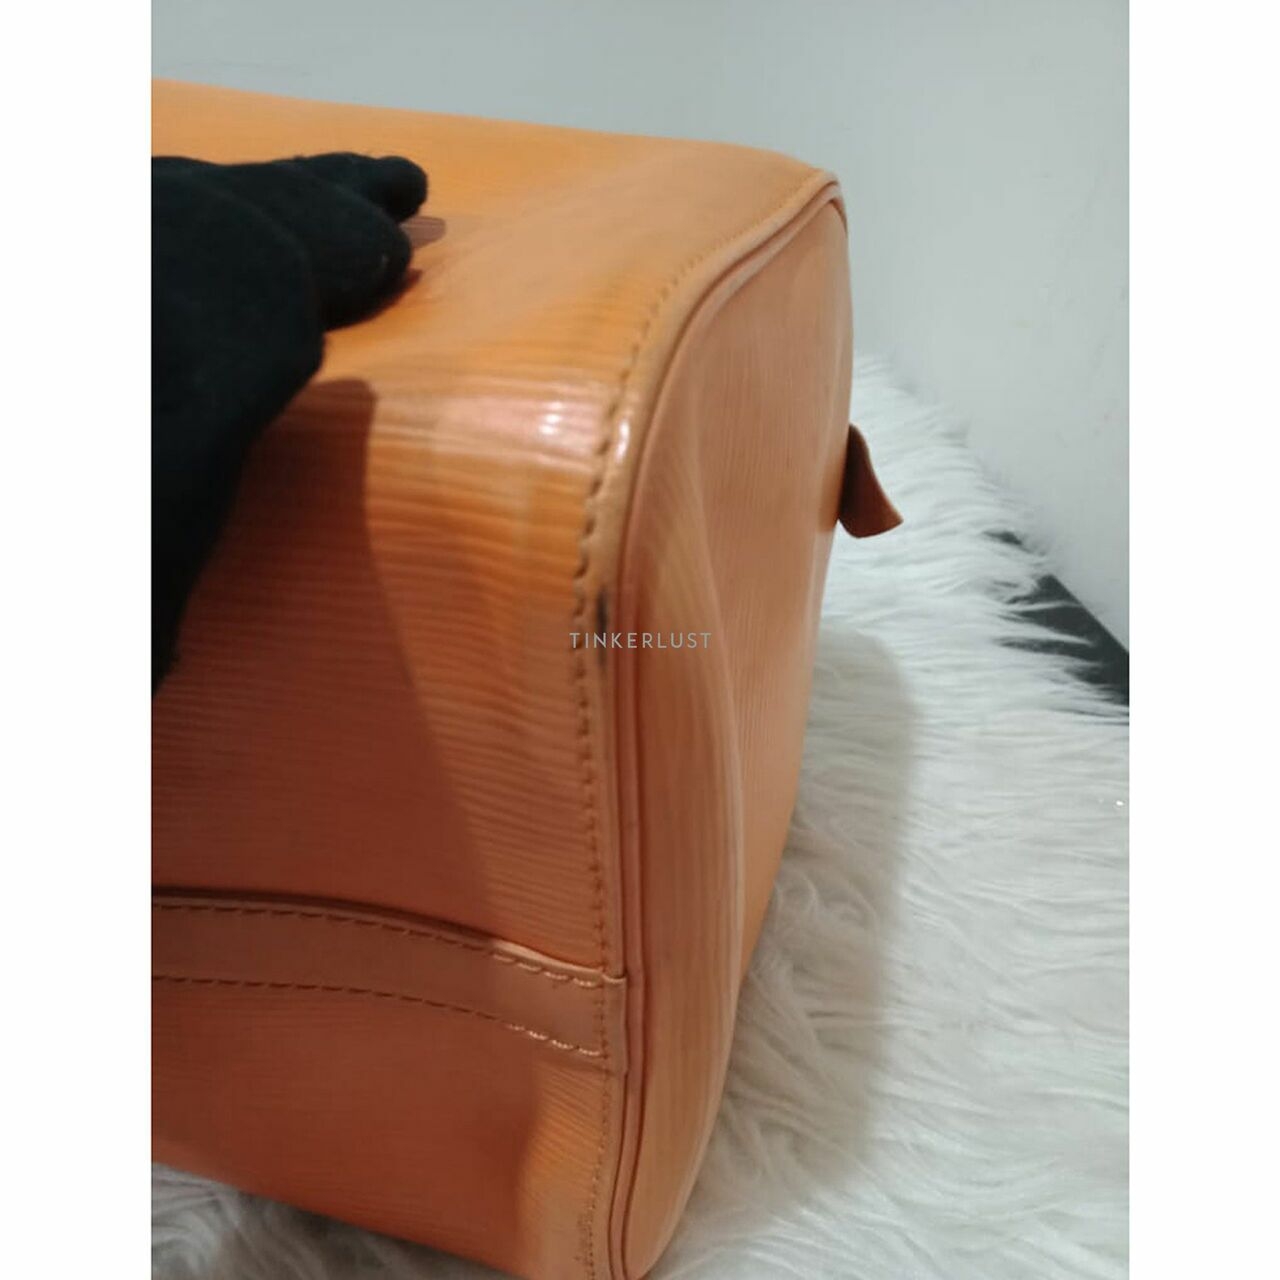 Louis Vuitton Speedy 30 Epi Leather Orange 2013